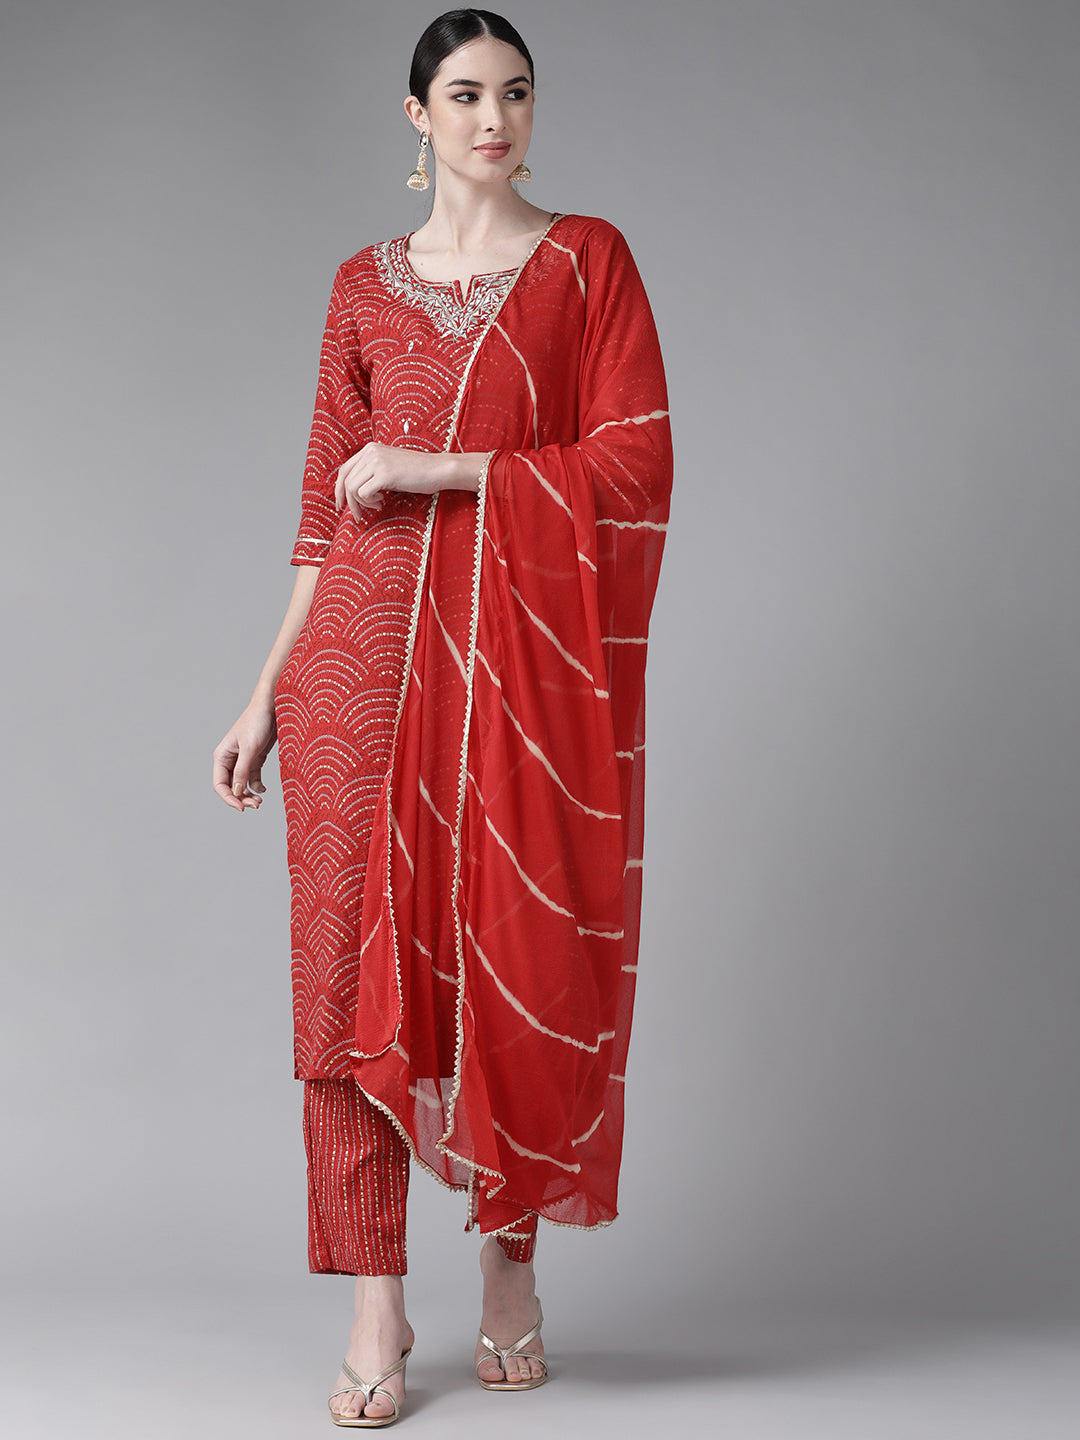 Women's Cotton Blend Red Embroidered A-Line Kurta Trouser Dupatta Set - Navyaa